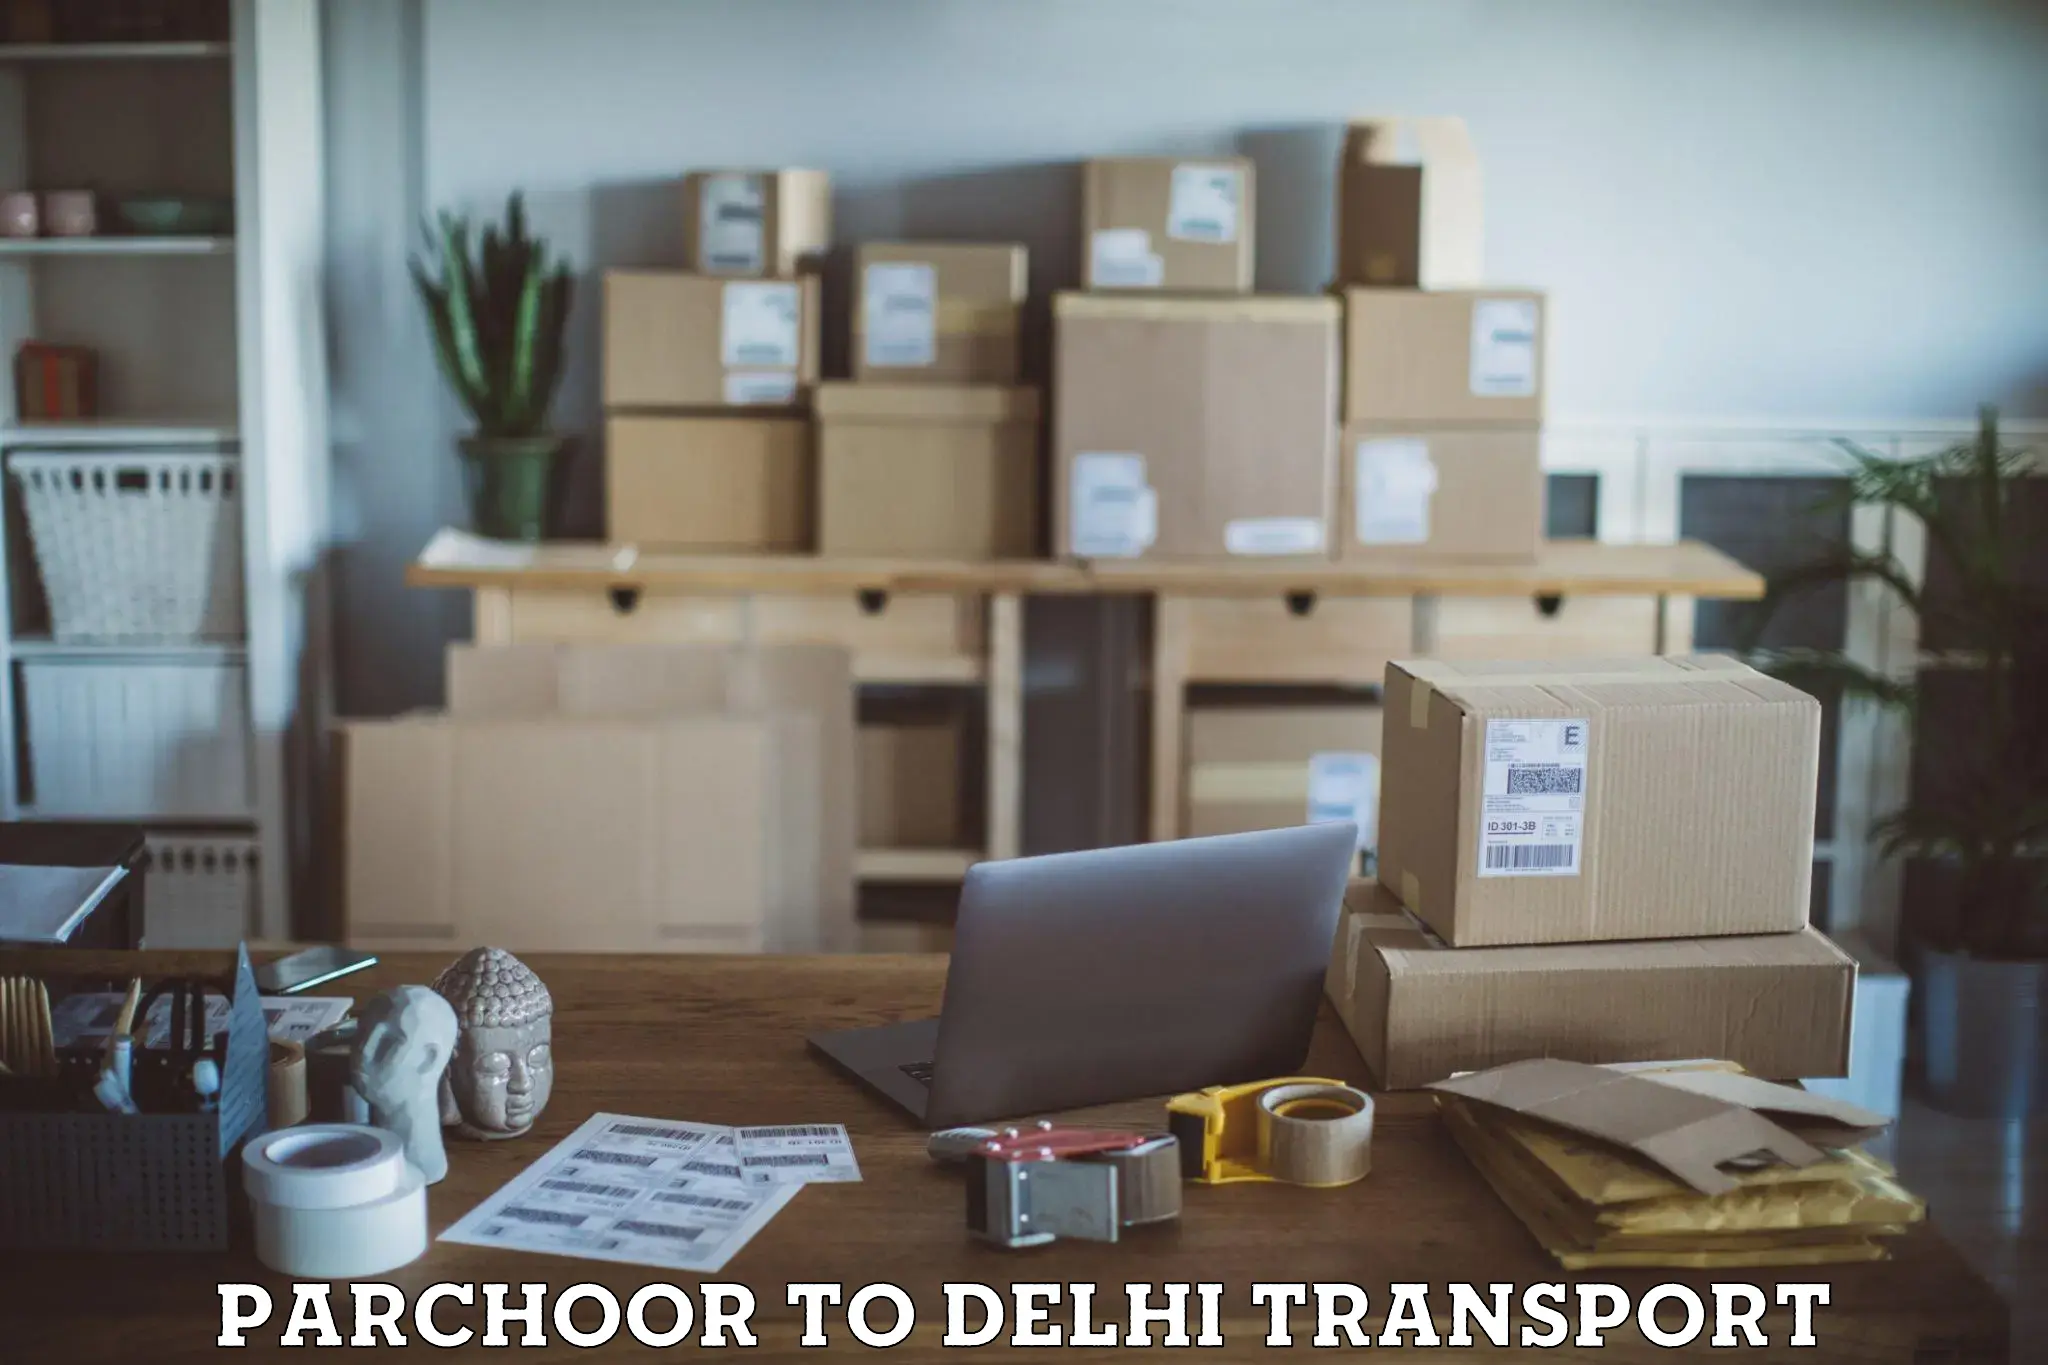 Vehicle courier services Parchoor to Delhi